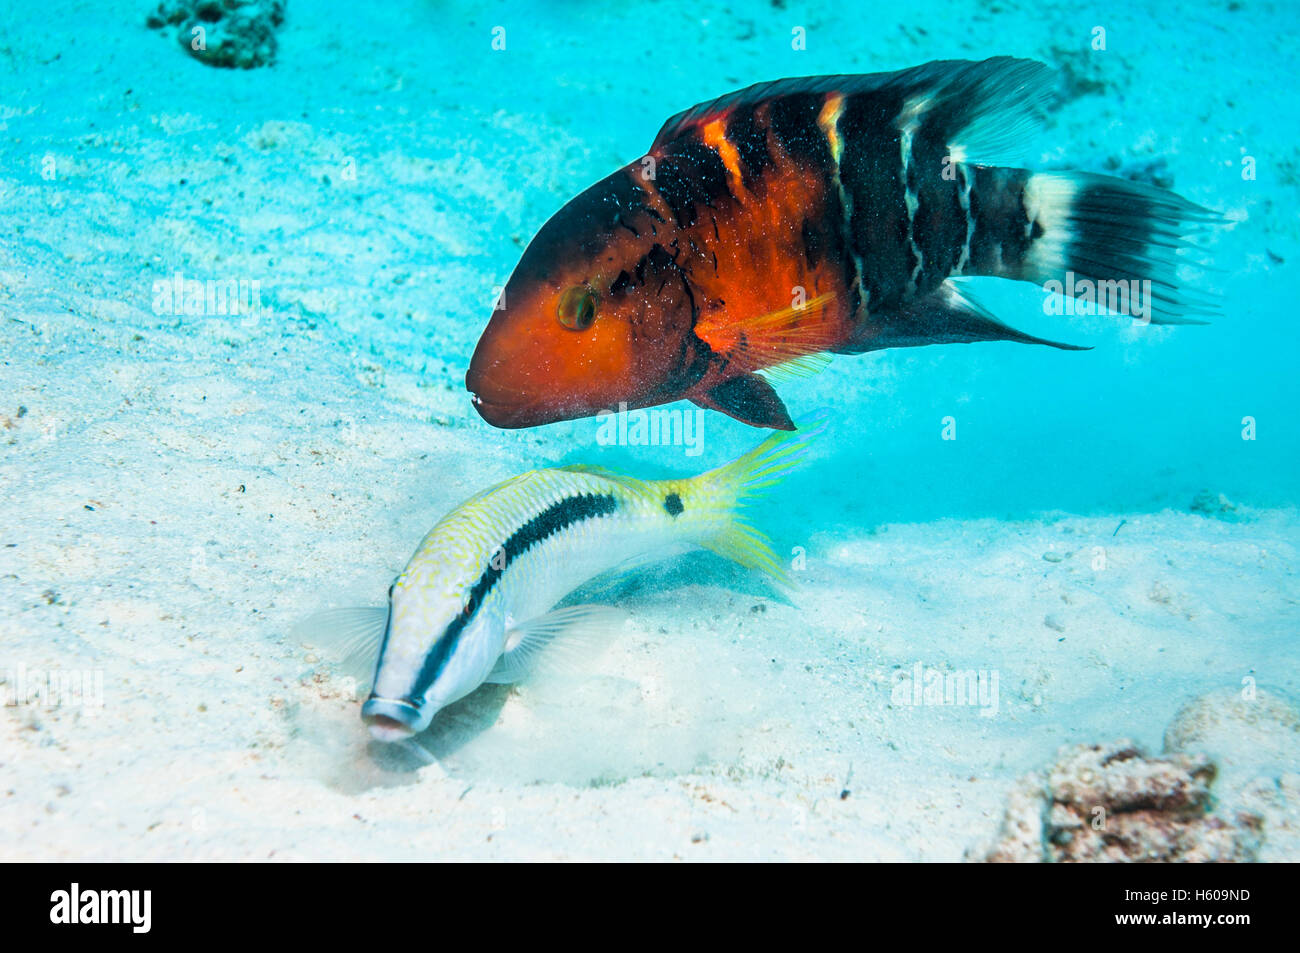 Redbanded oder Redbreasted Lippfisch (Cheilinus Quinquecinctus) folgt ein Strich und Punkt Goatfish (Parapeneus Barbarinus) im Graben Stockfoto